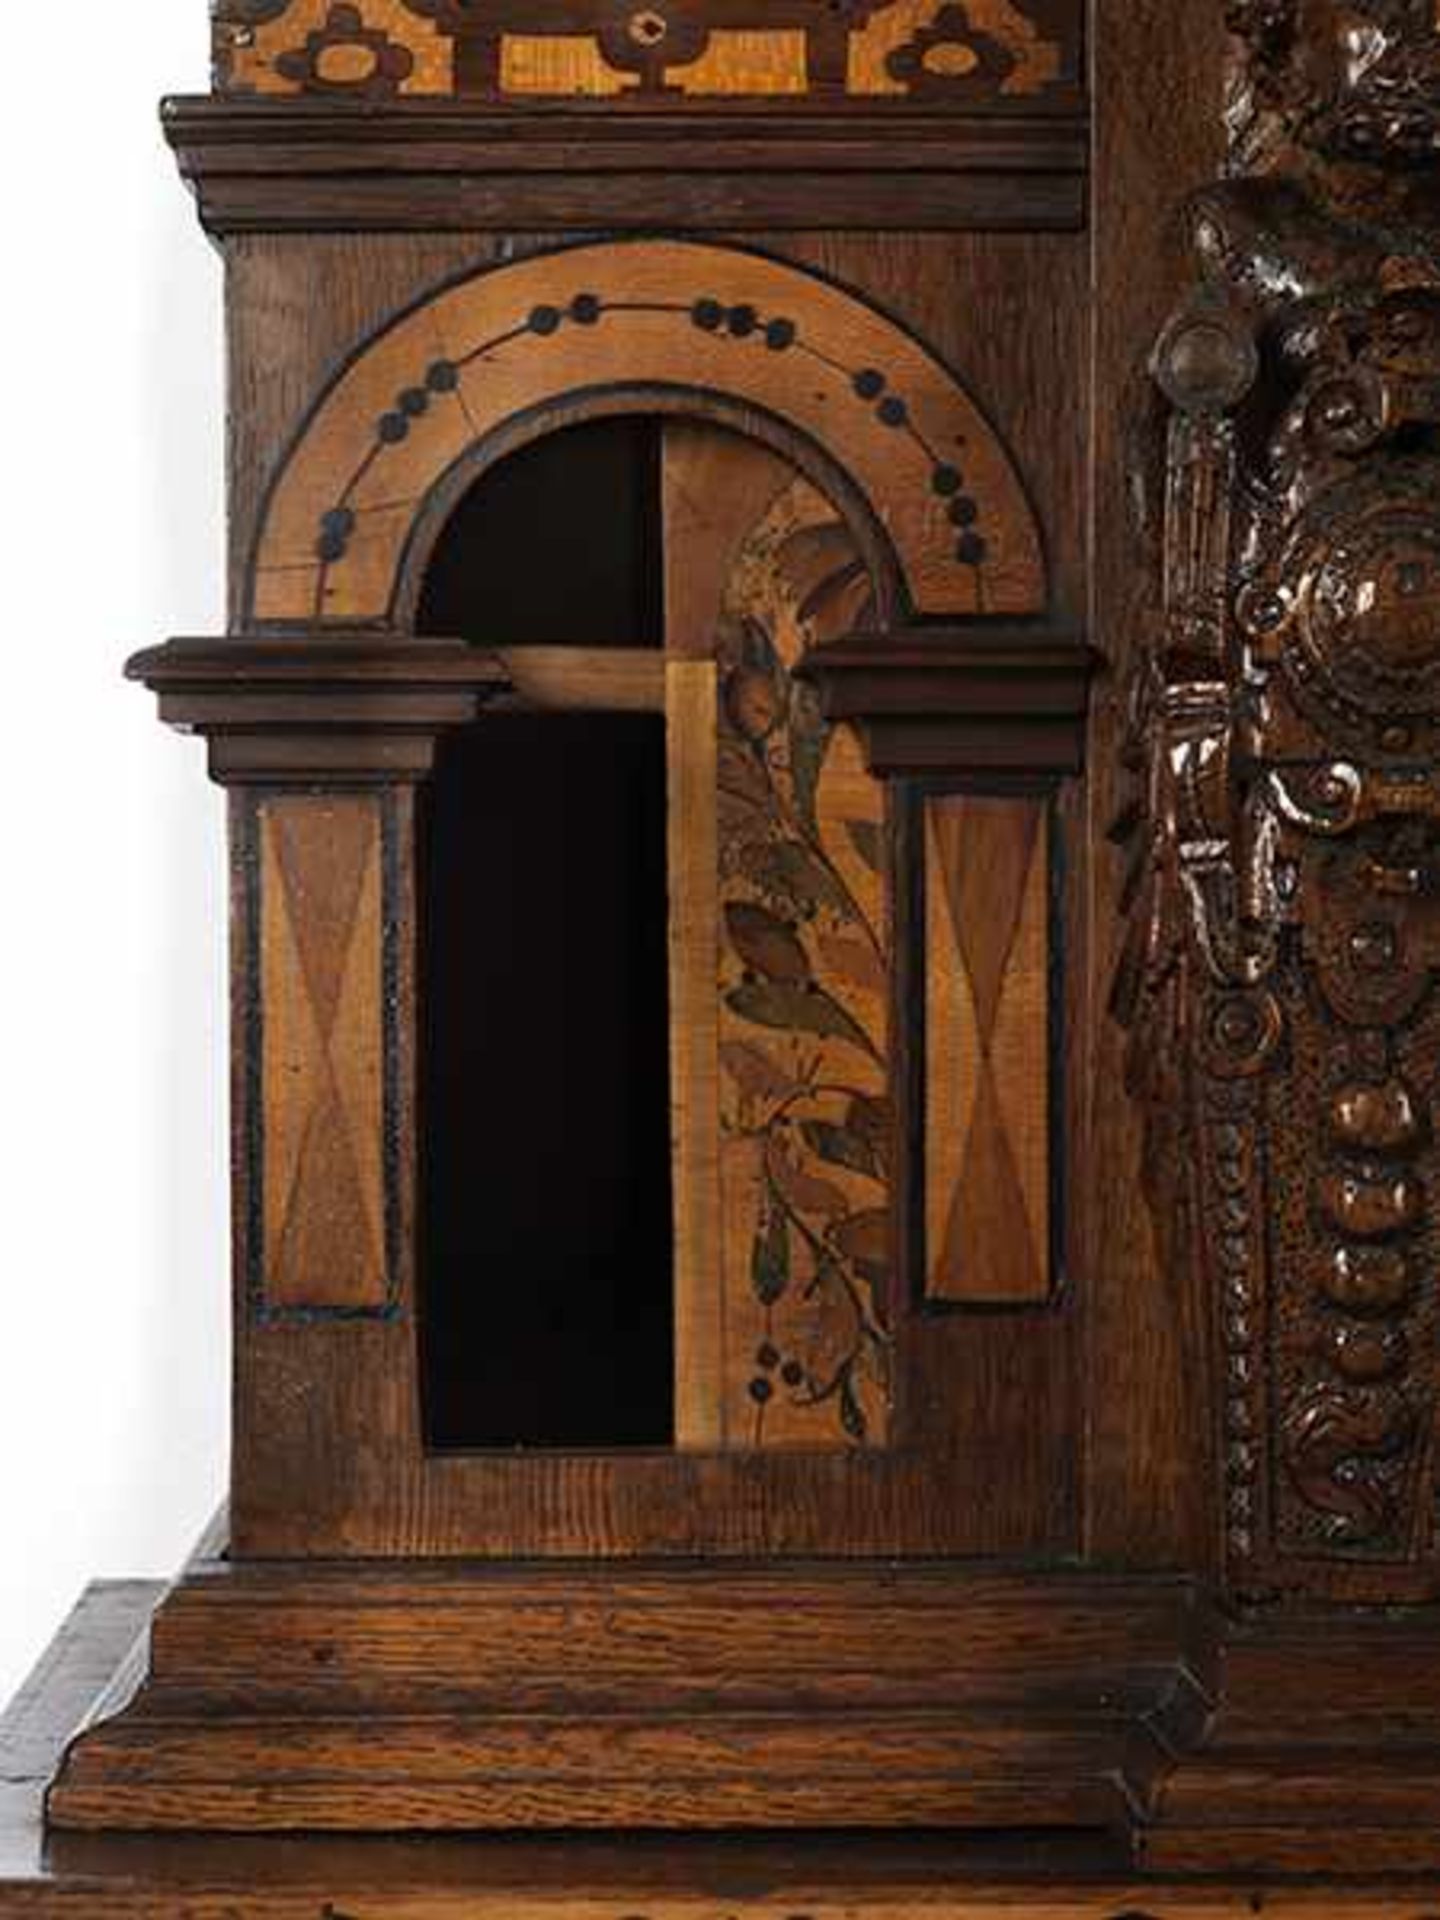 Äußerst seltener musealer Kabinettsekretär des 17. Jahrhunderts aus Adelsbesitz Höhe: 180 cm. - Bild 8 aus 9